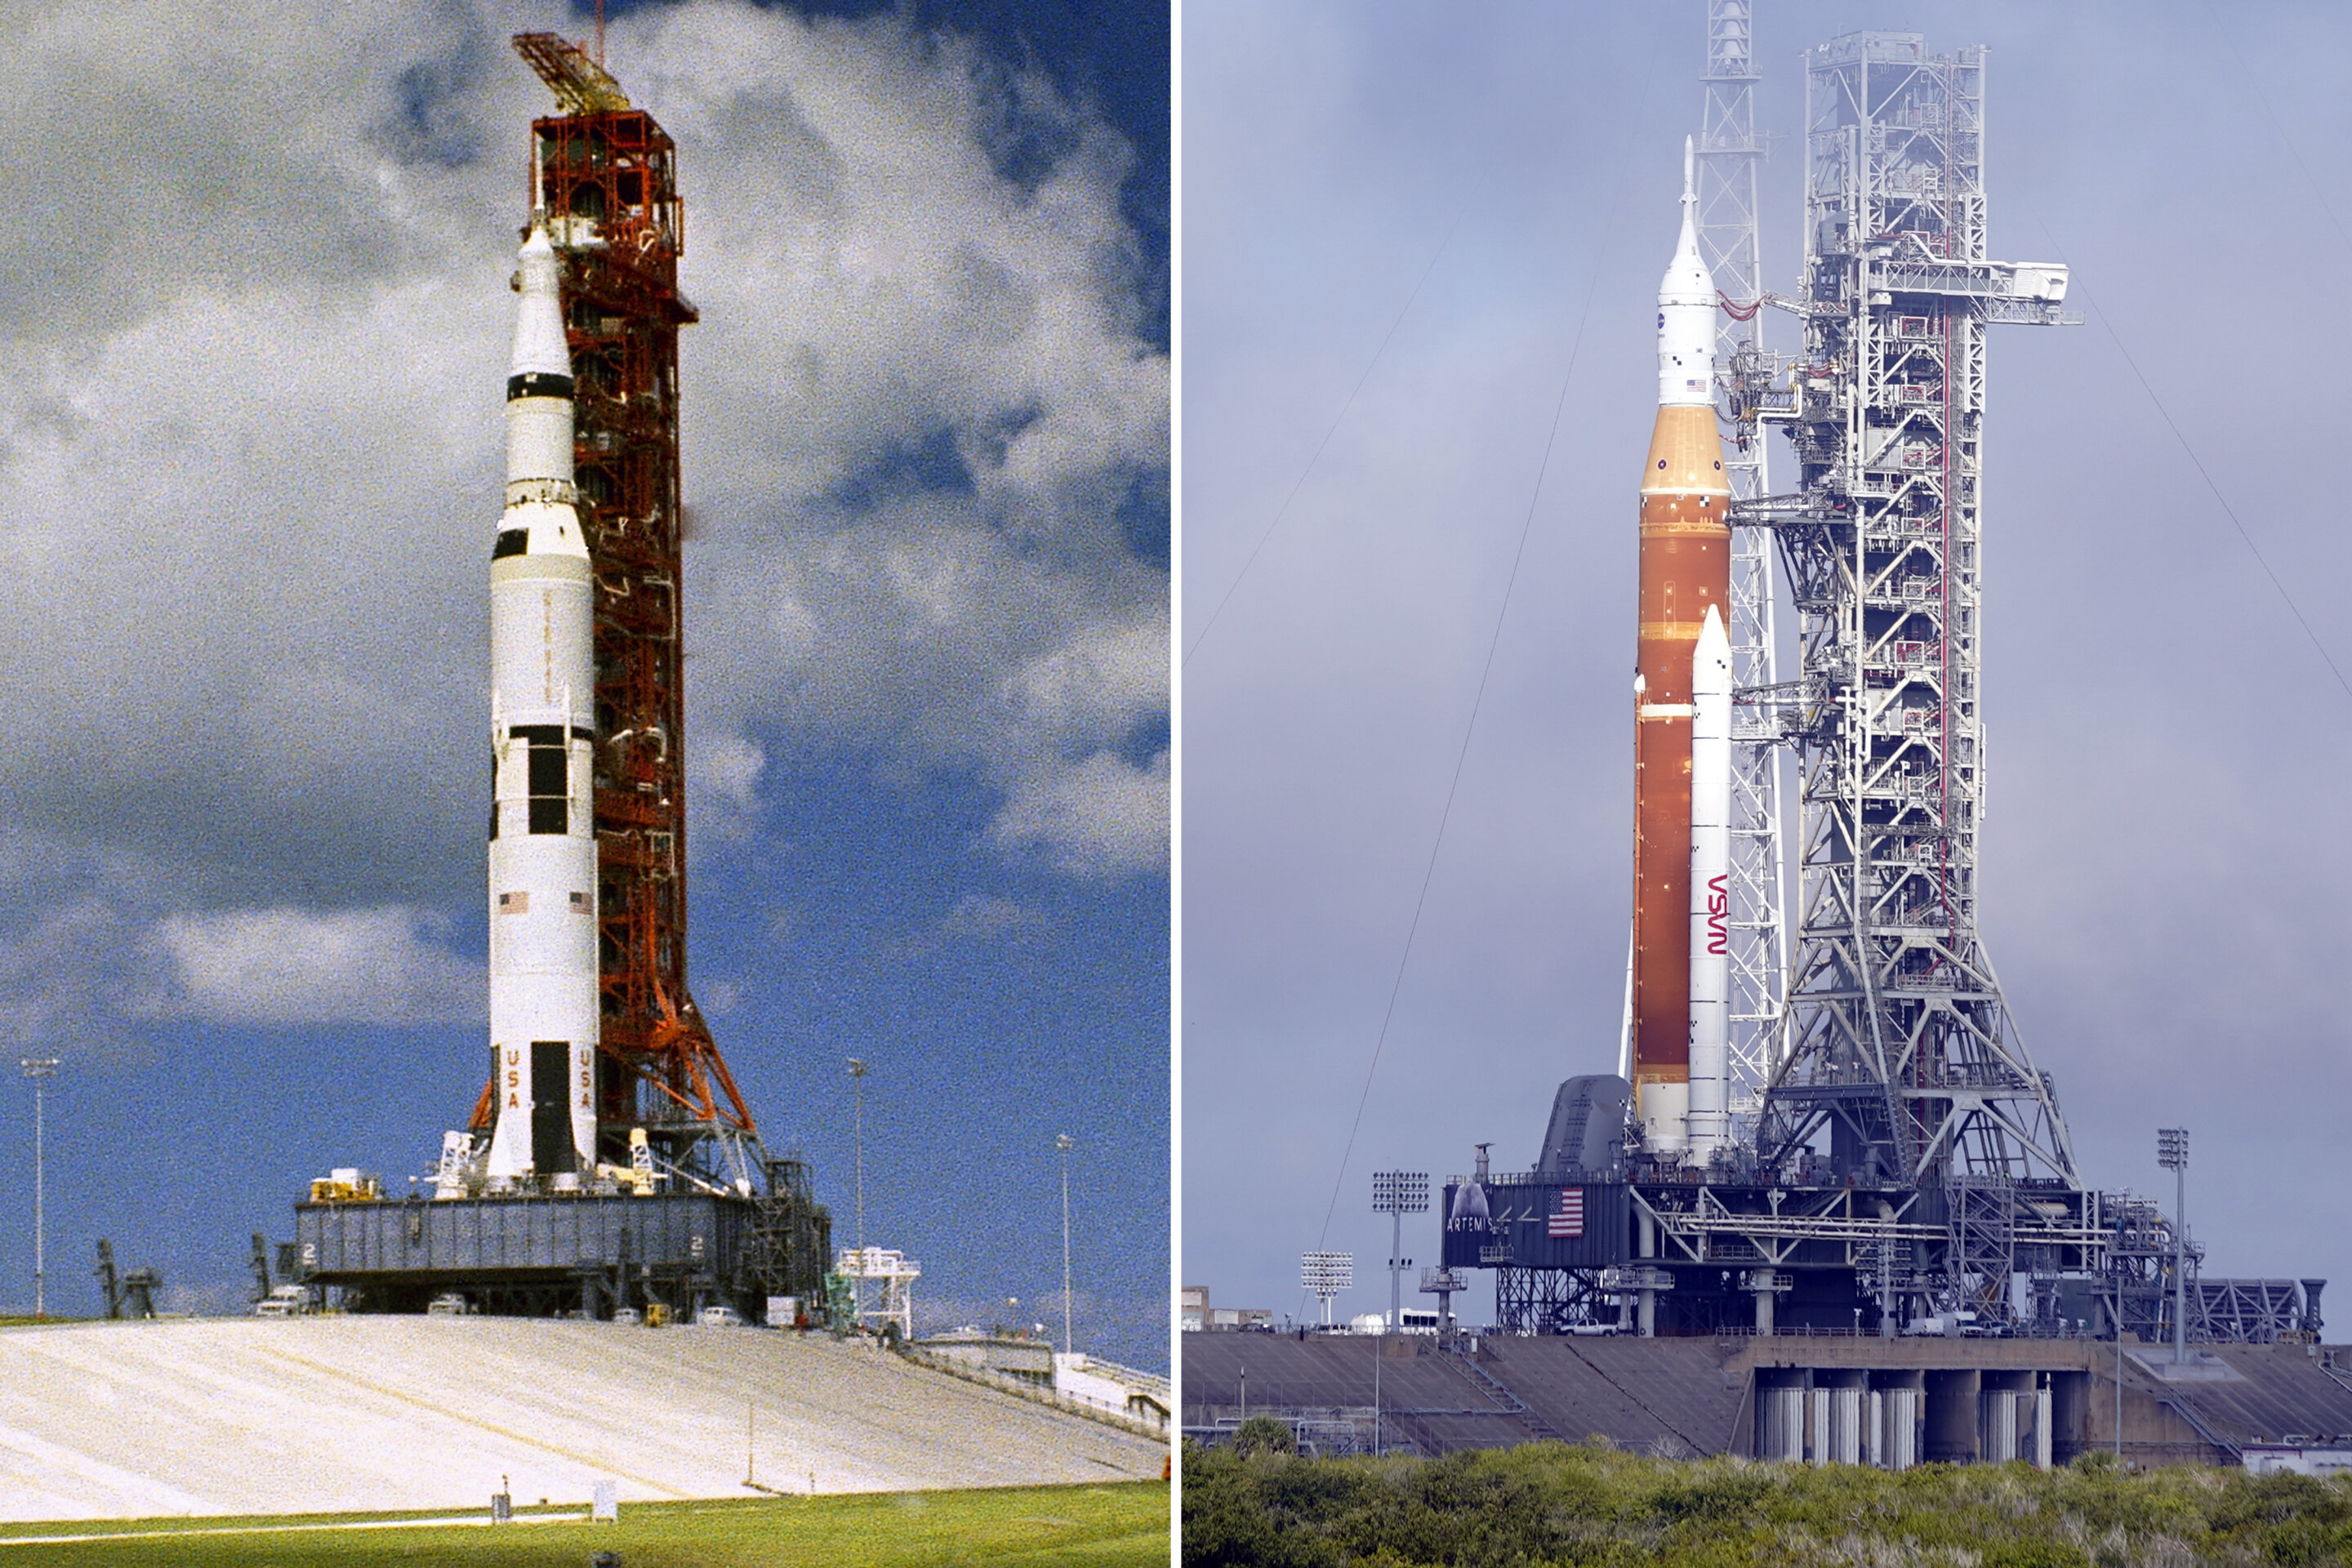 #NASA tests new moon rocket, 50 years after Apollo